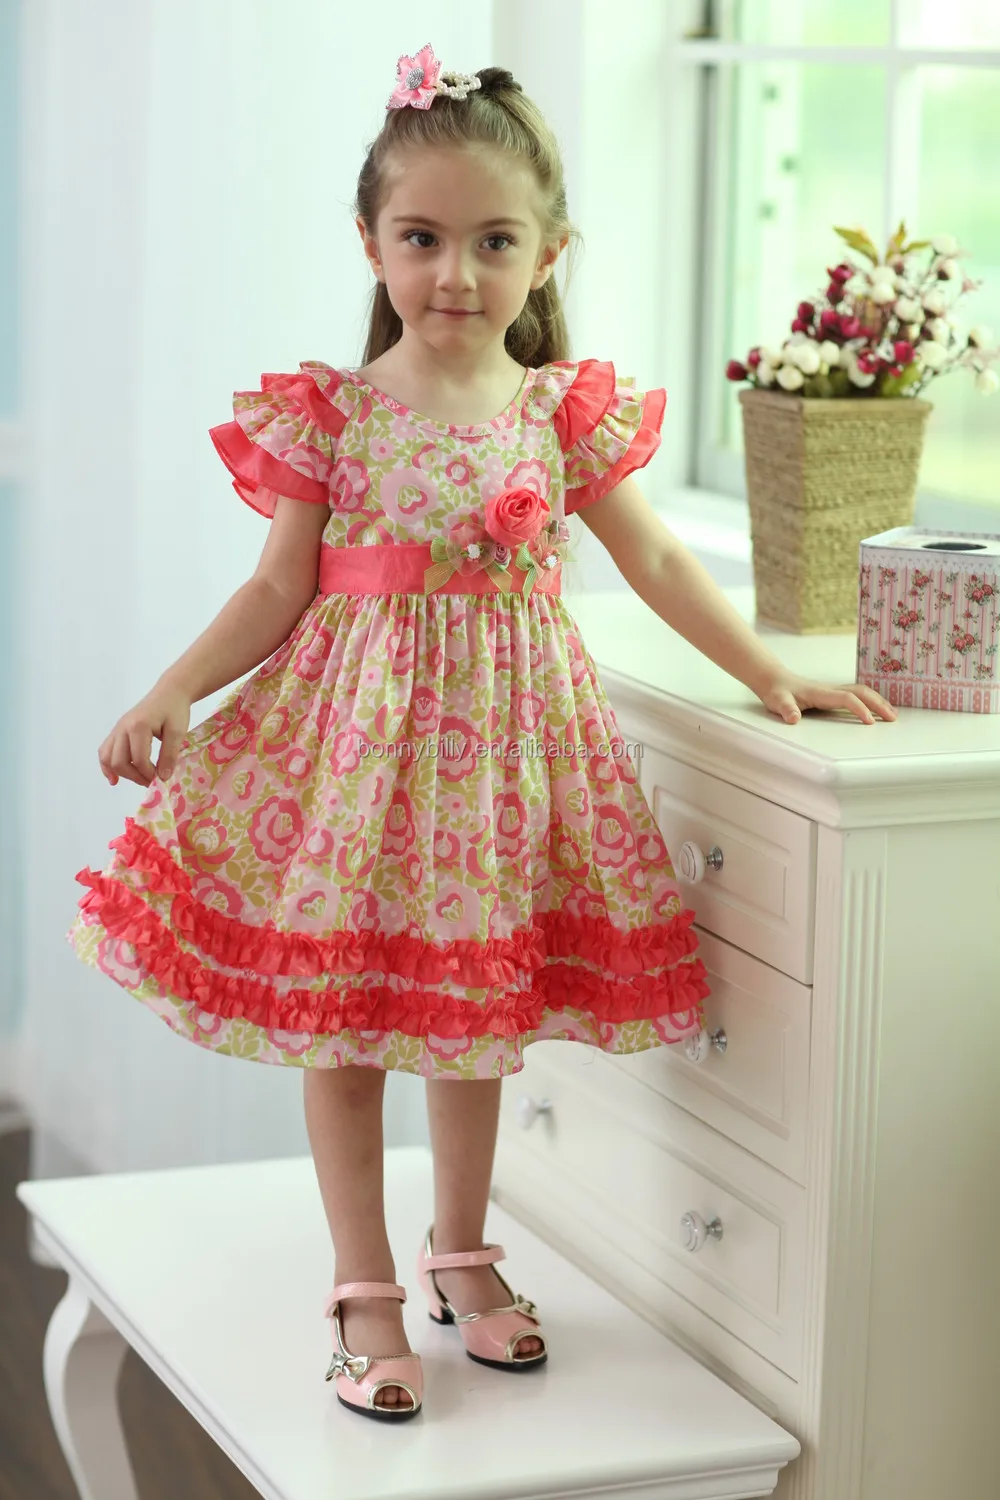 latest model dress for childrens